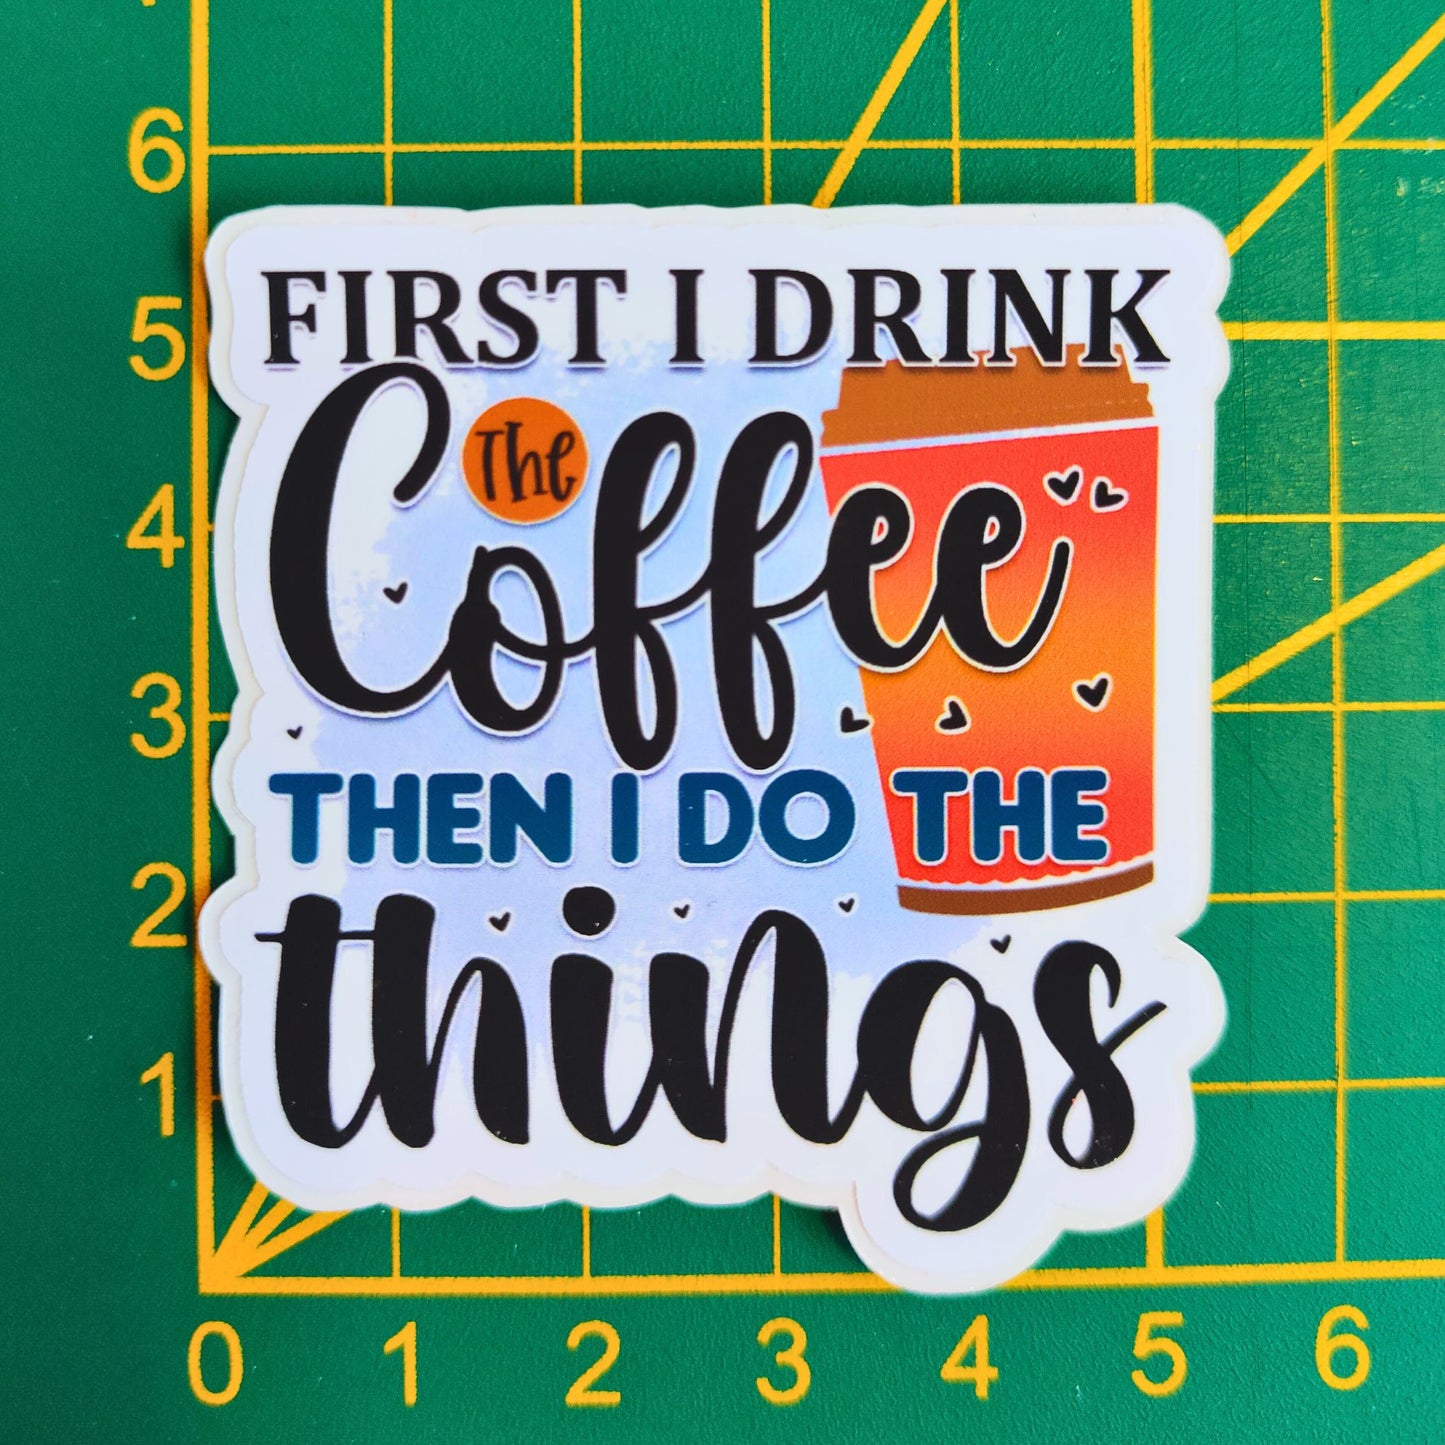 Coffee Life Addict - Uitgesneden Sticker